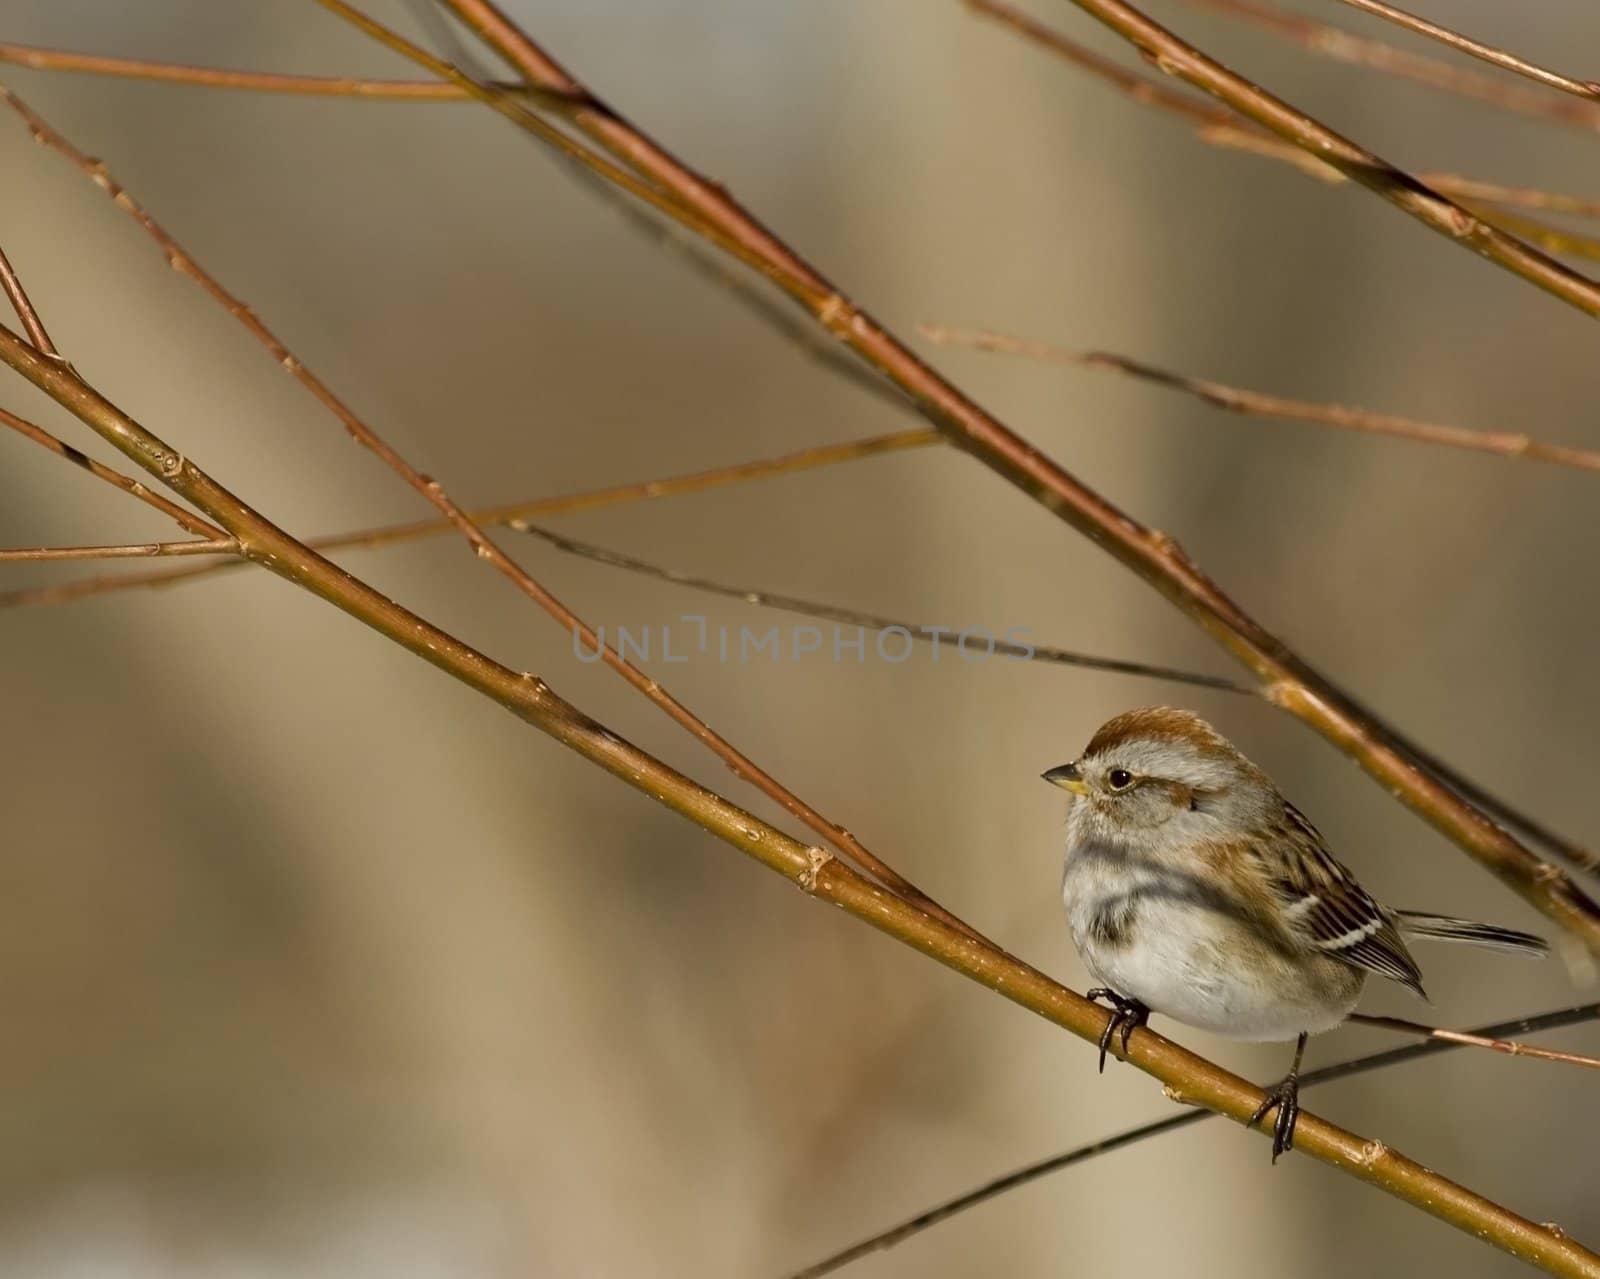 American Tree Sparrow (Spizella arborea) by brm1949